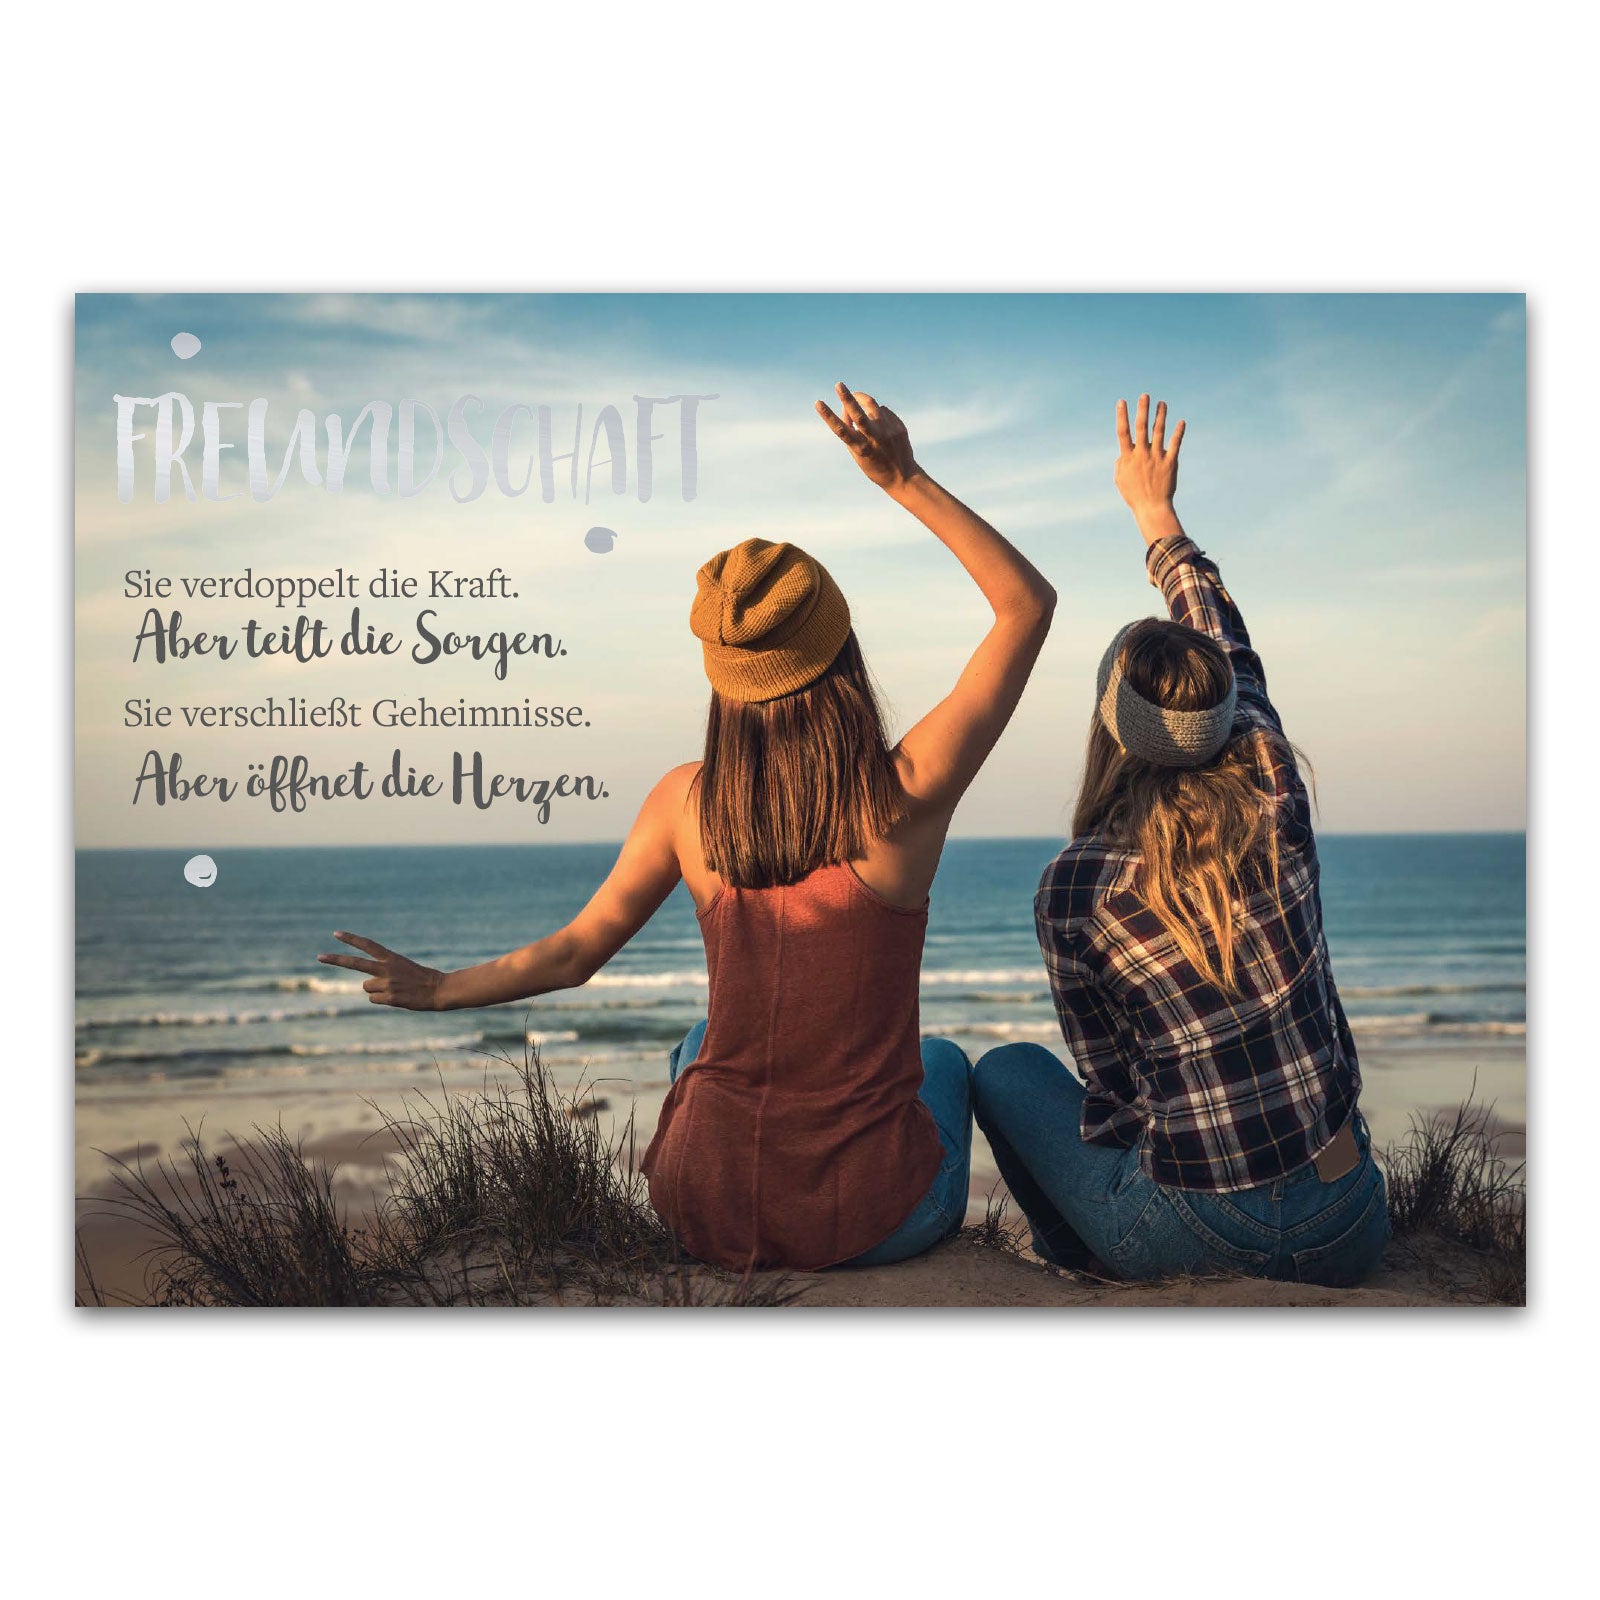 Postkarte "Freundschaft - Sie verdoppelt die Kraft. Aber teilt die Sorgen. Sie verschließt Geheimnisse. Aber öffnet die Herzen"